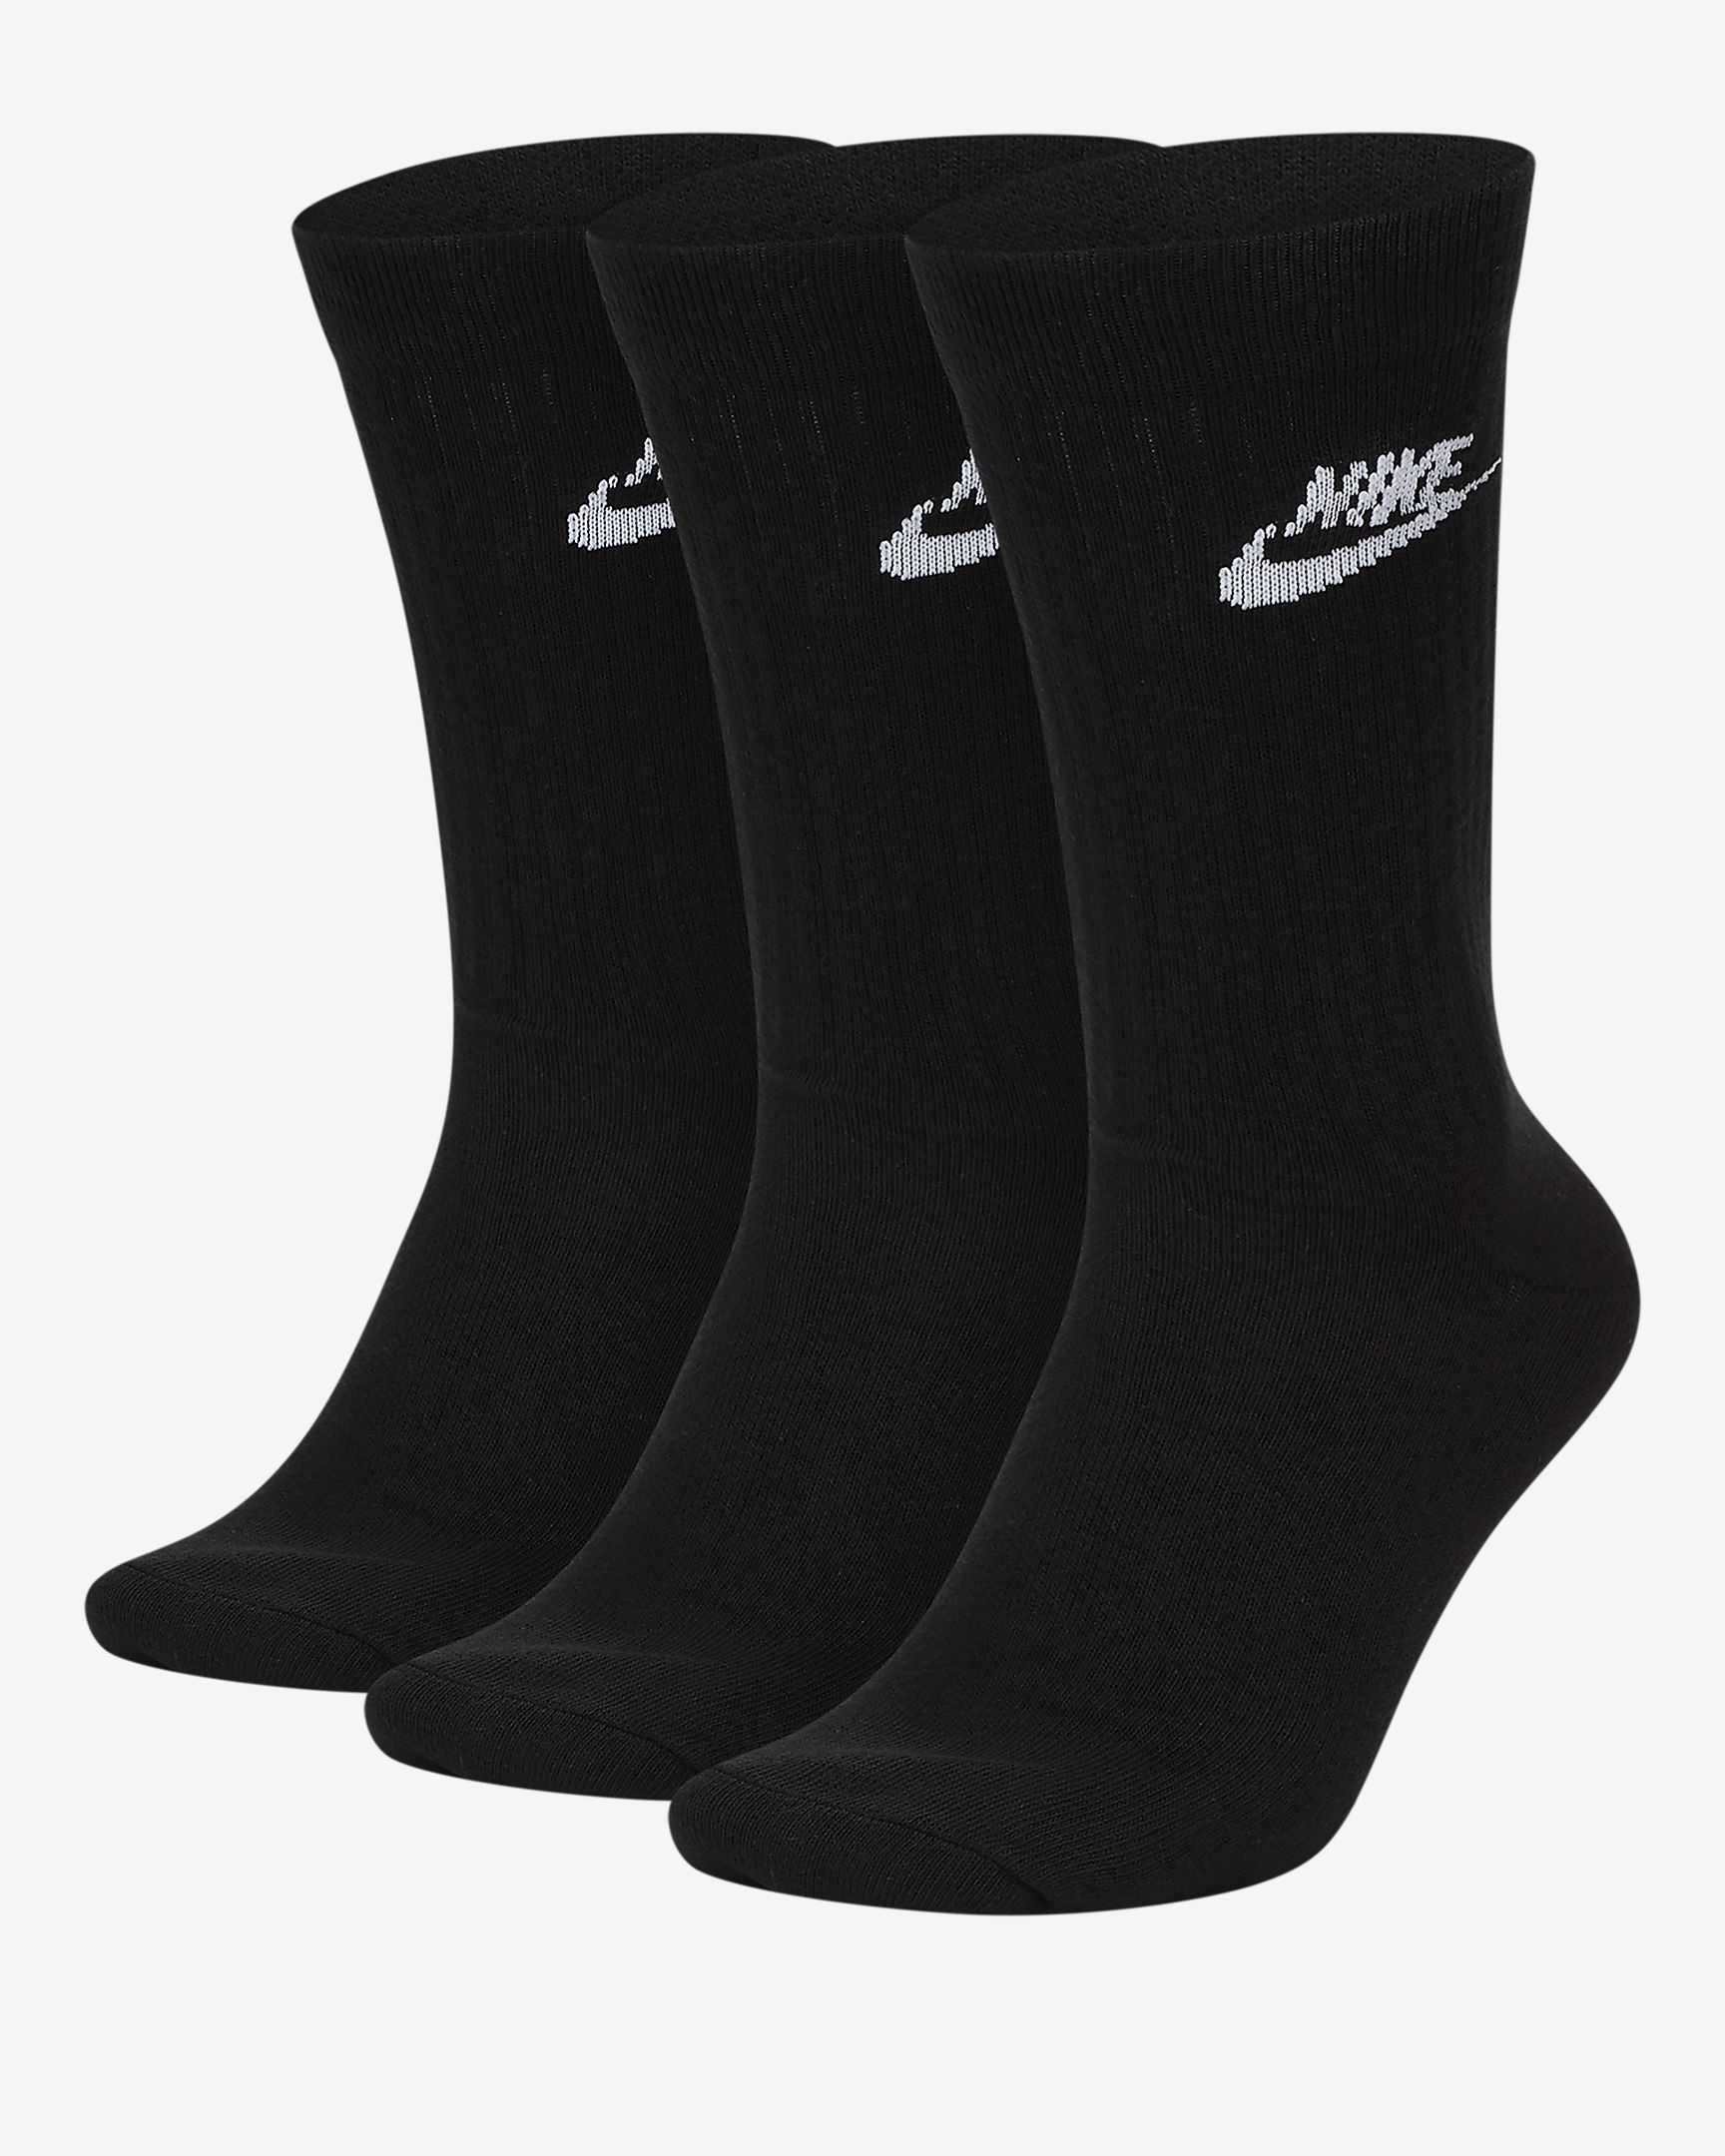 Achetez Nike Chaussettes mi-mollet (3 paires) - Accessoires